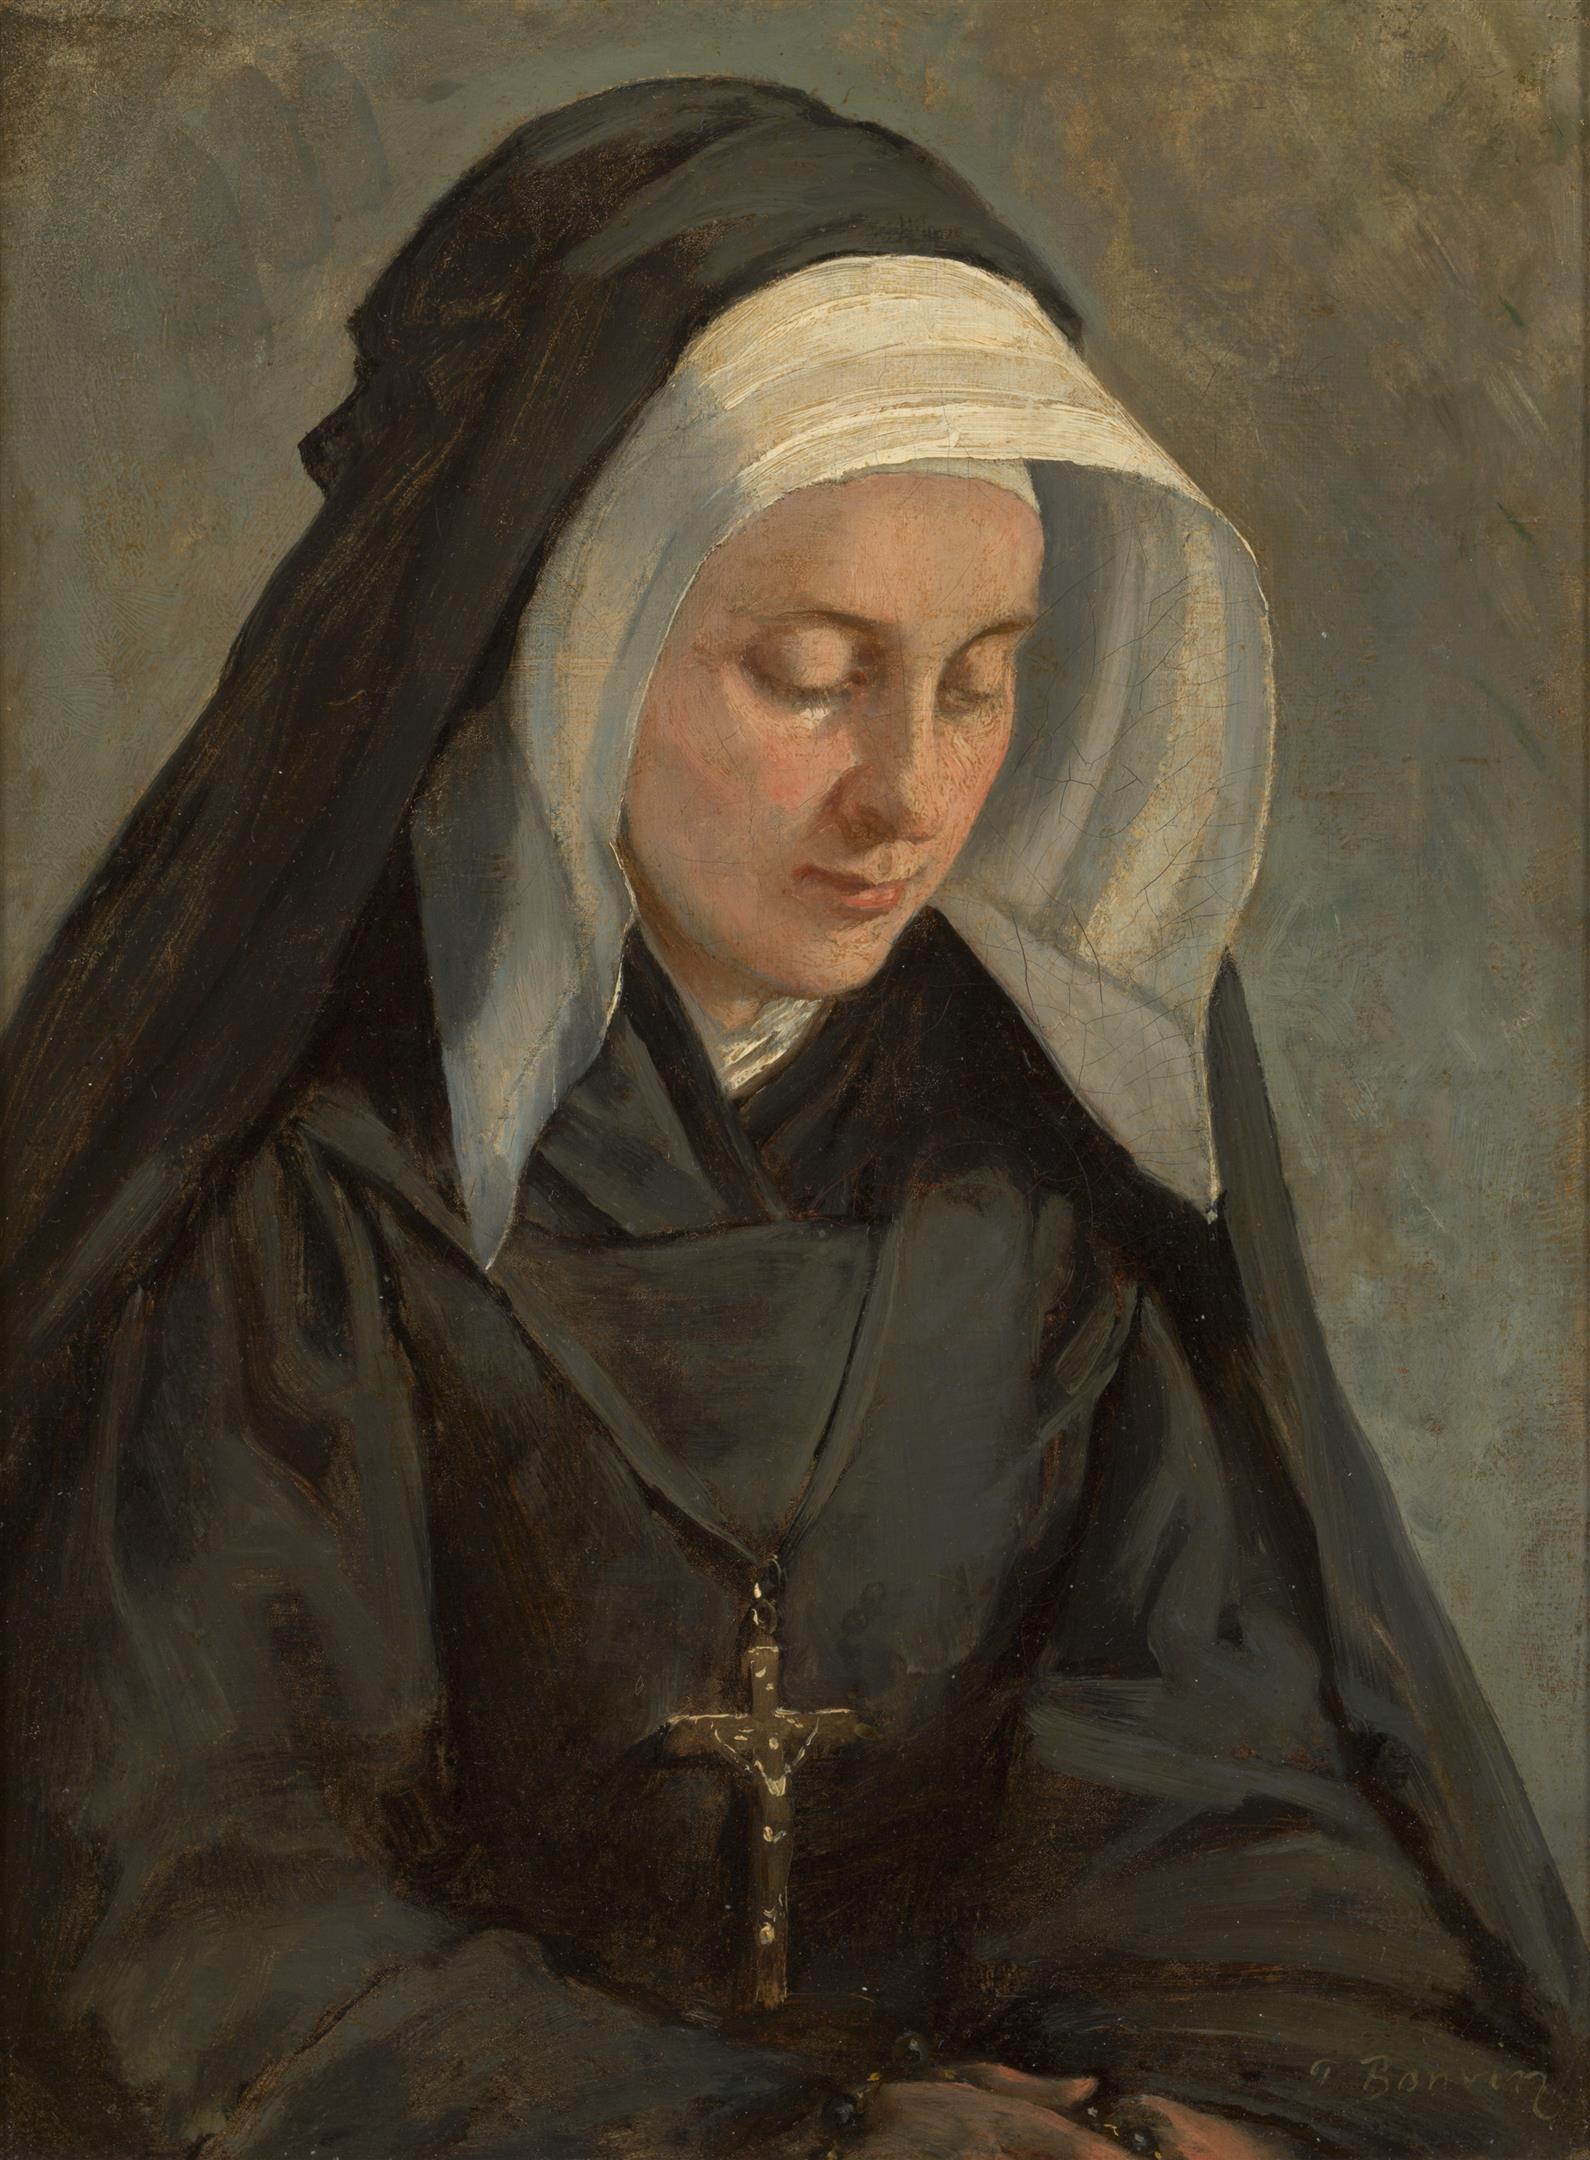 Een non met zwart habijt en witte kap, de blik op haar gevouwen handen gericht.